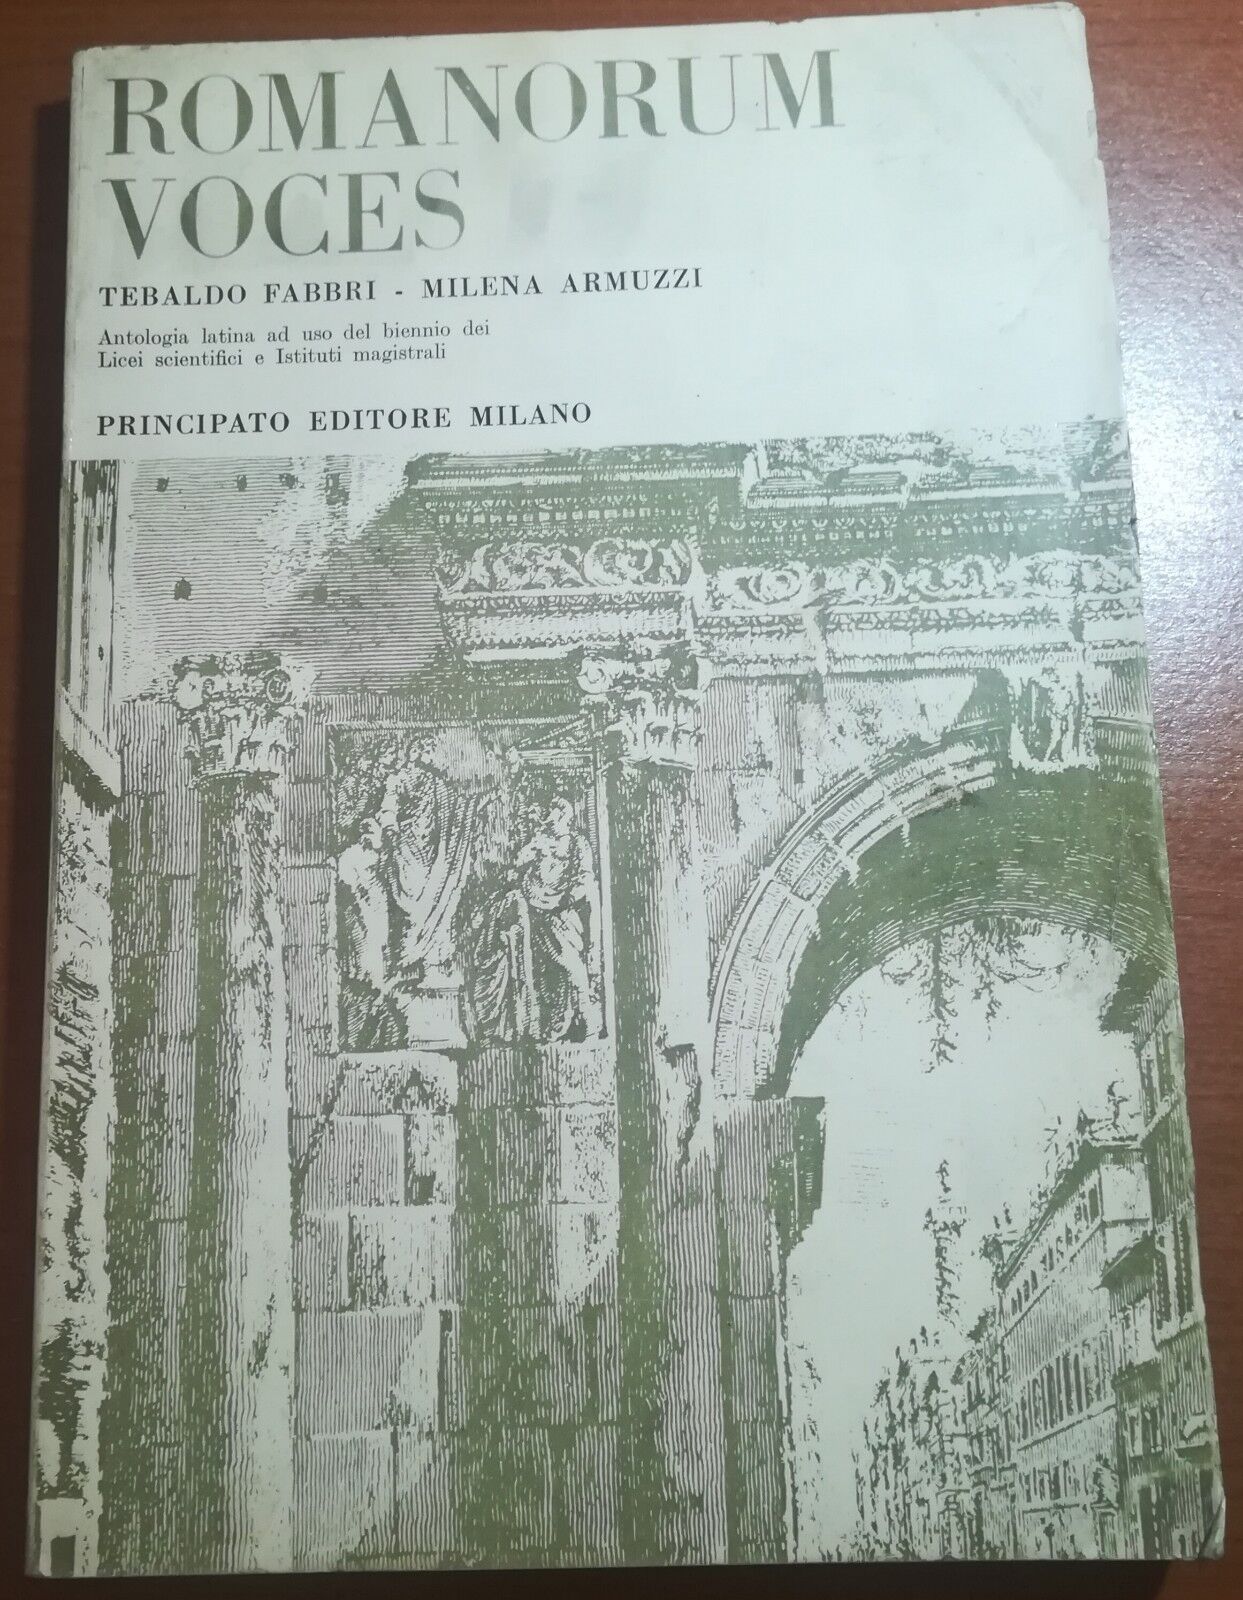 Romanorum Voces - Tebaldo Fabbri/Milena Armuzzi - Prinipato - 1969 - M